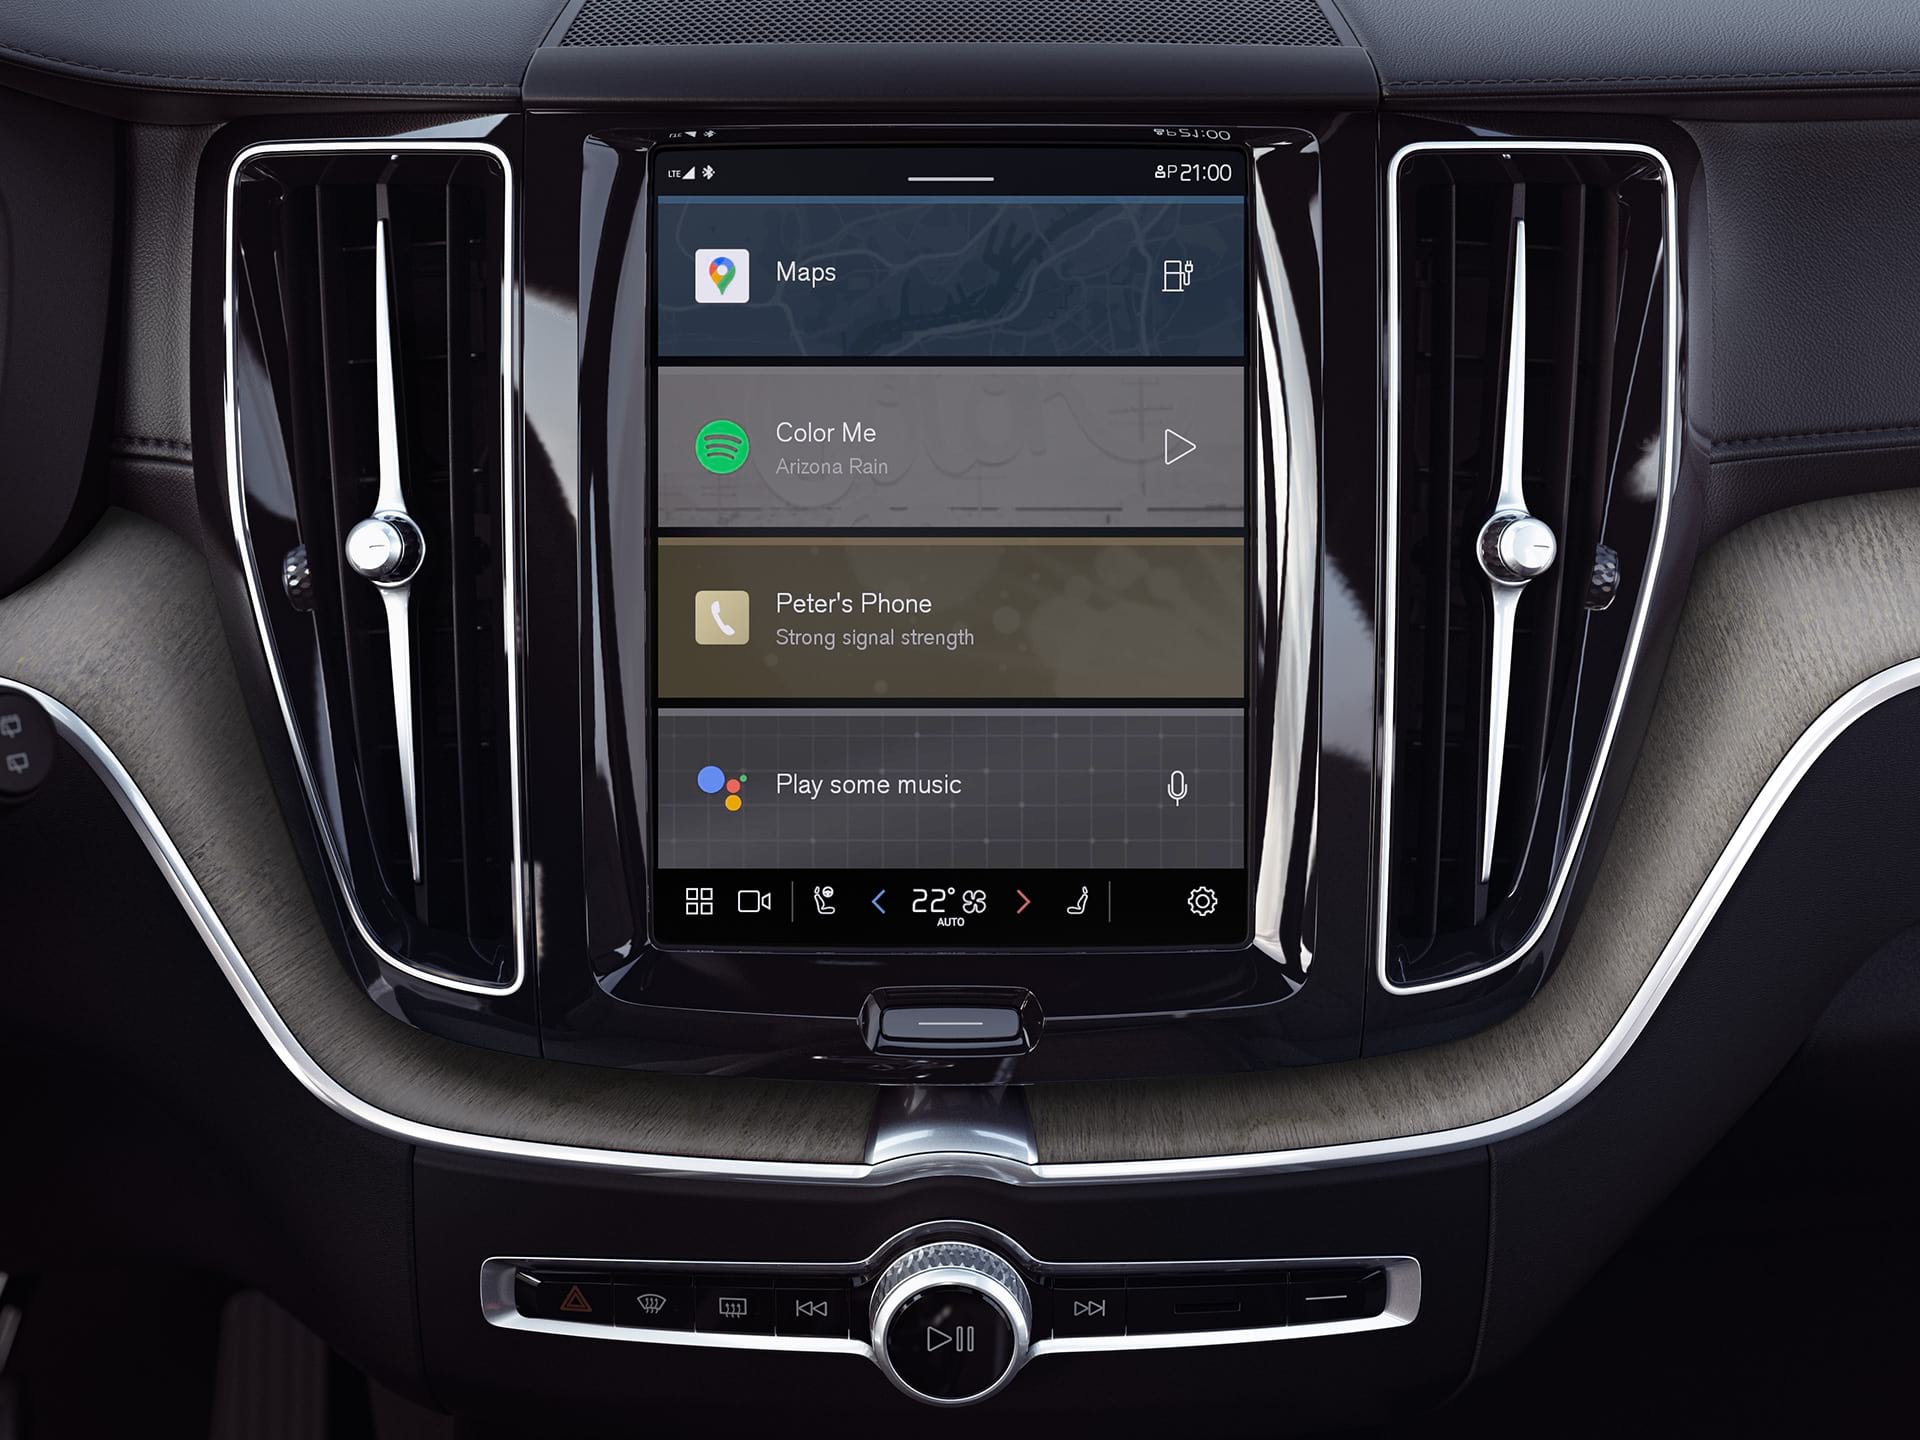 Consola central de un SUV Volvo mostrando el sistema de información y entretenimiento de Google integrado.